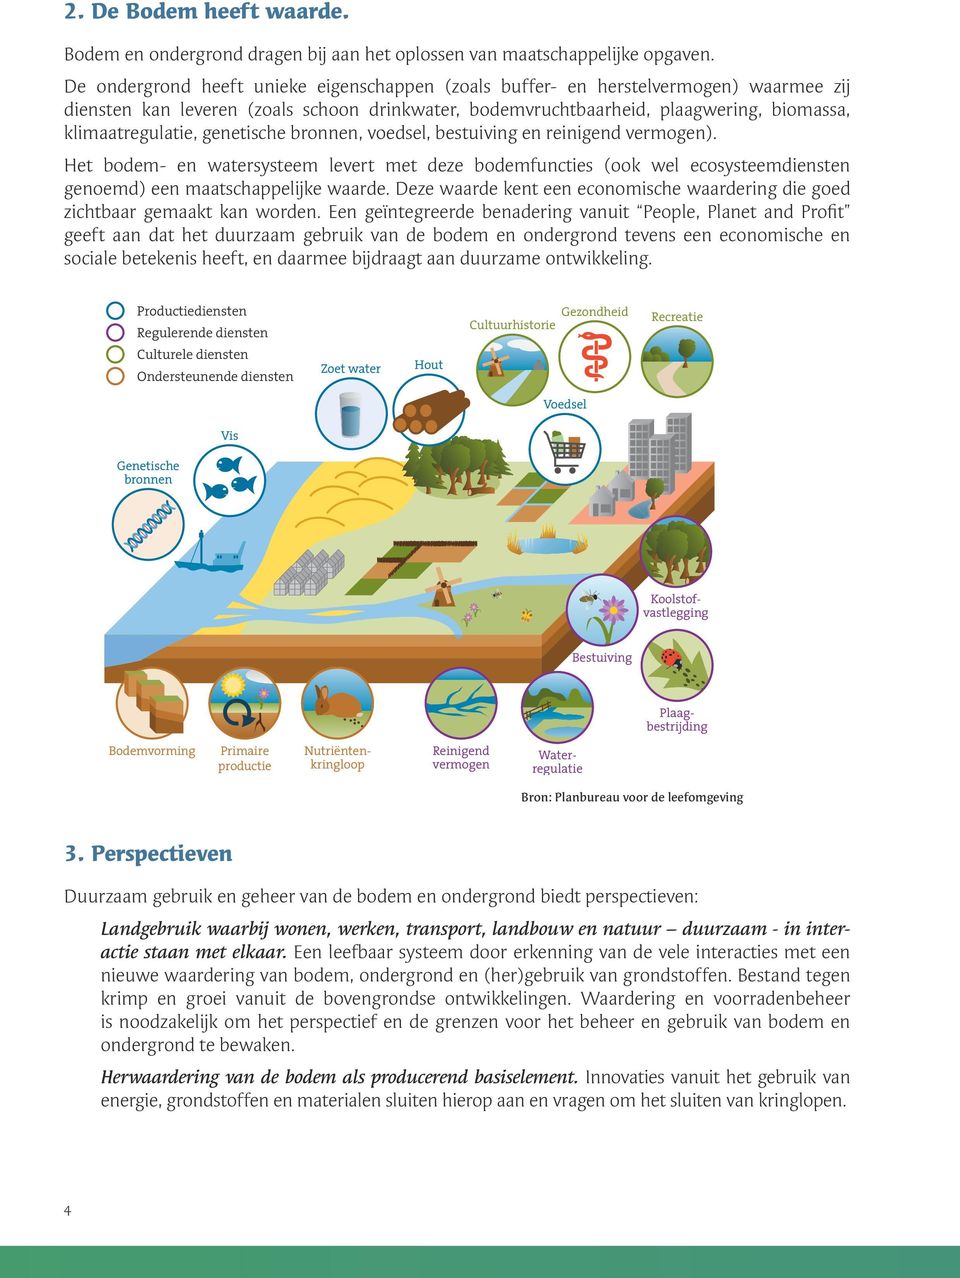 genetische bronnen, voedsel, bestuiving en reinigend vermogen). Het bodem- en watersysteem levert met deze bodemfuncties (ook wel ecosysteemdiensten genoemd) een maatschappelijke waarde.